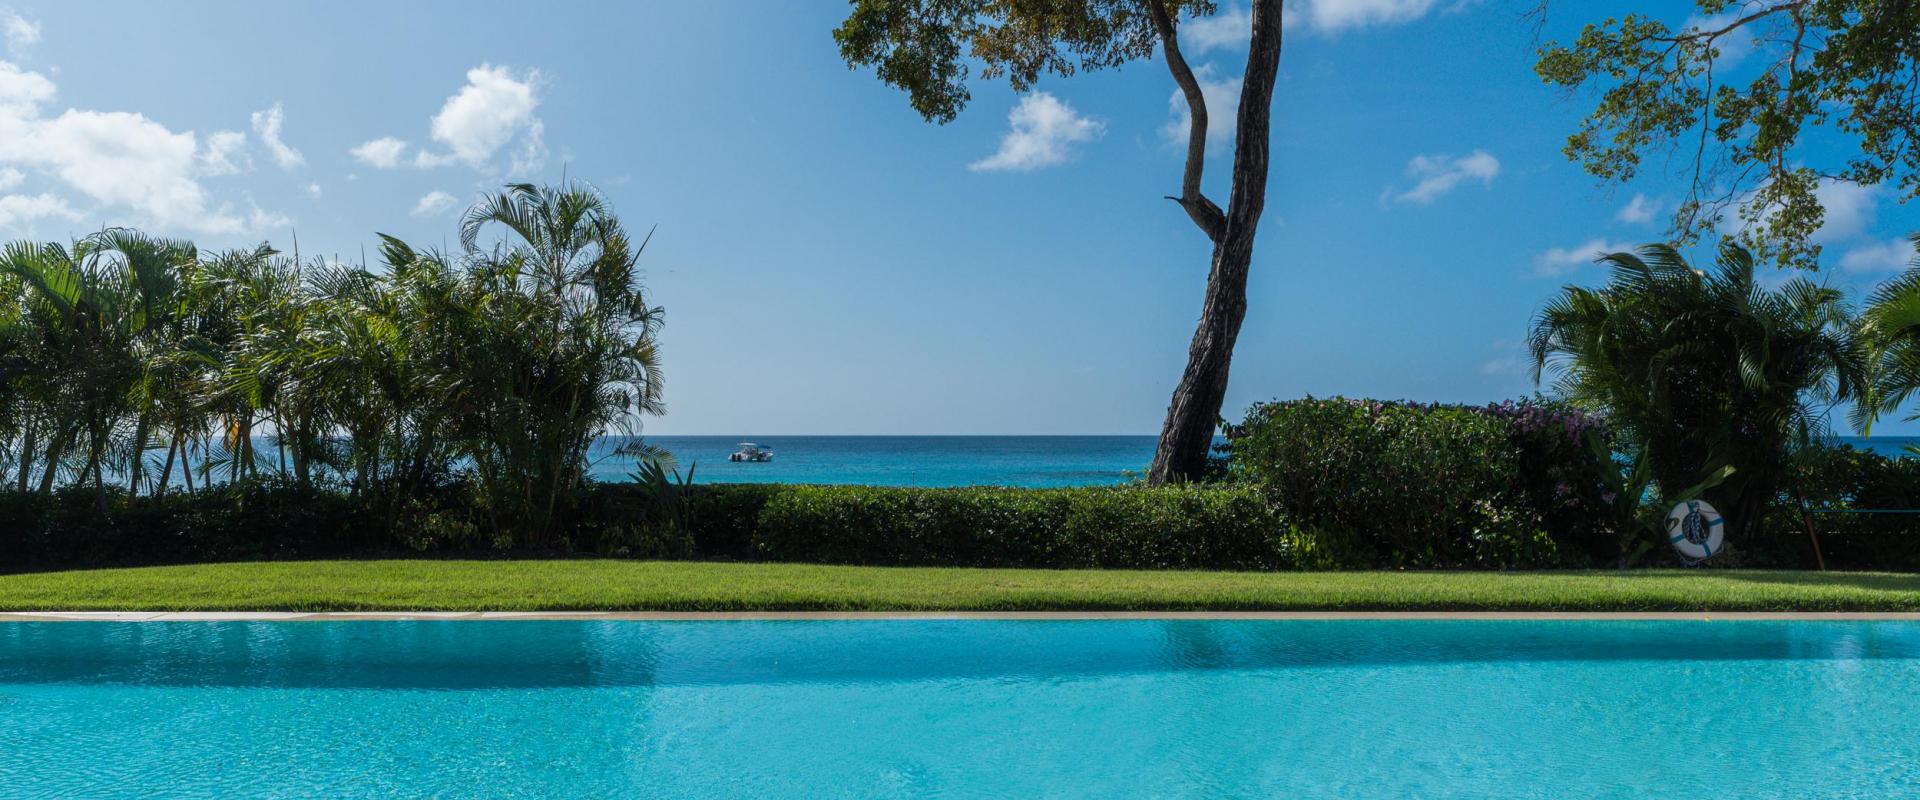 Villa Tamarindo House/Villa For Rent in Barbados